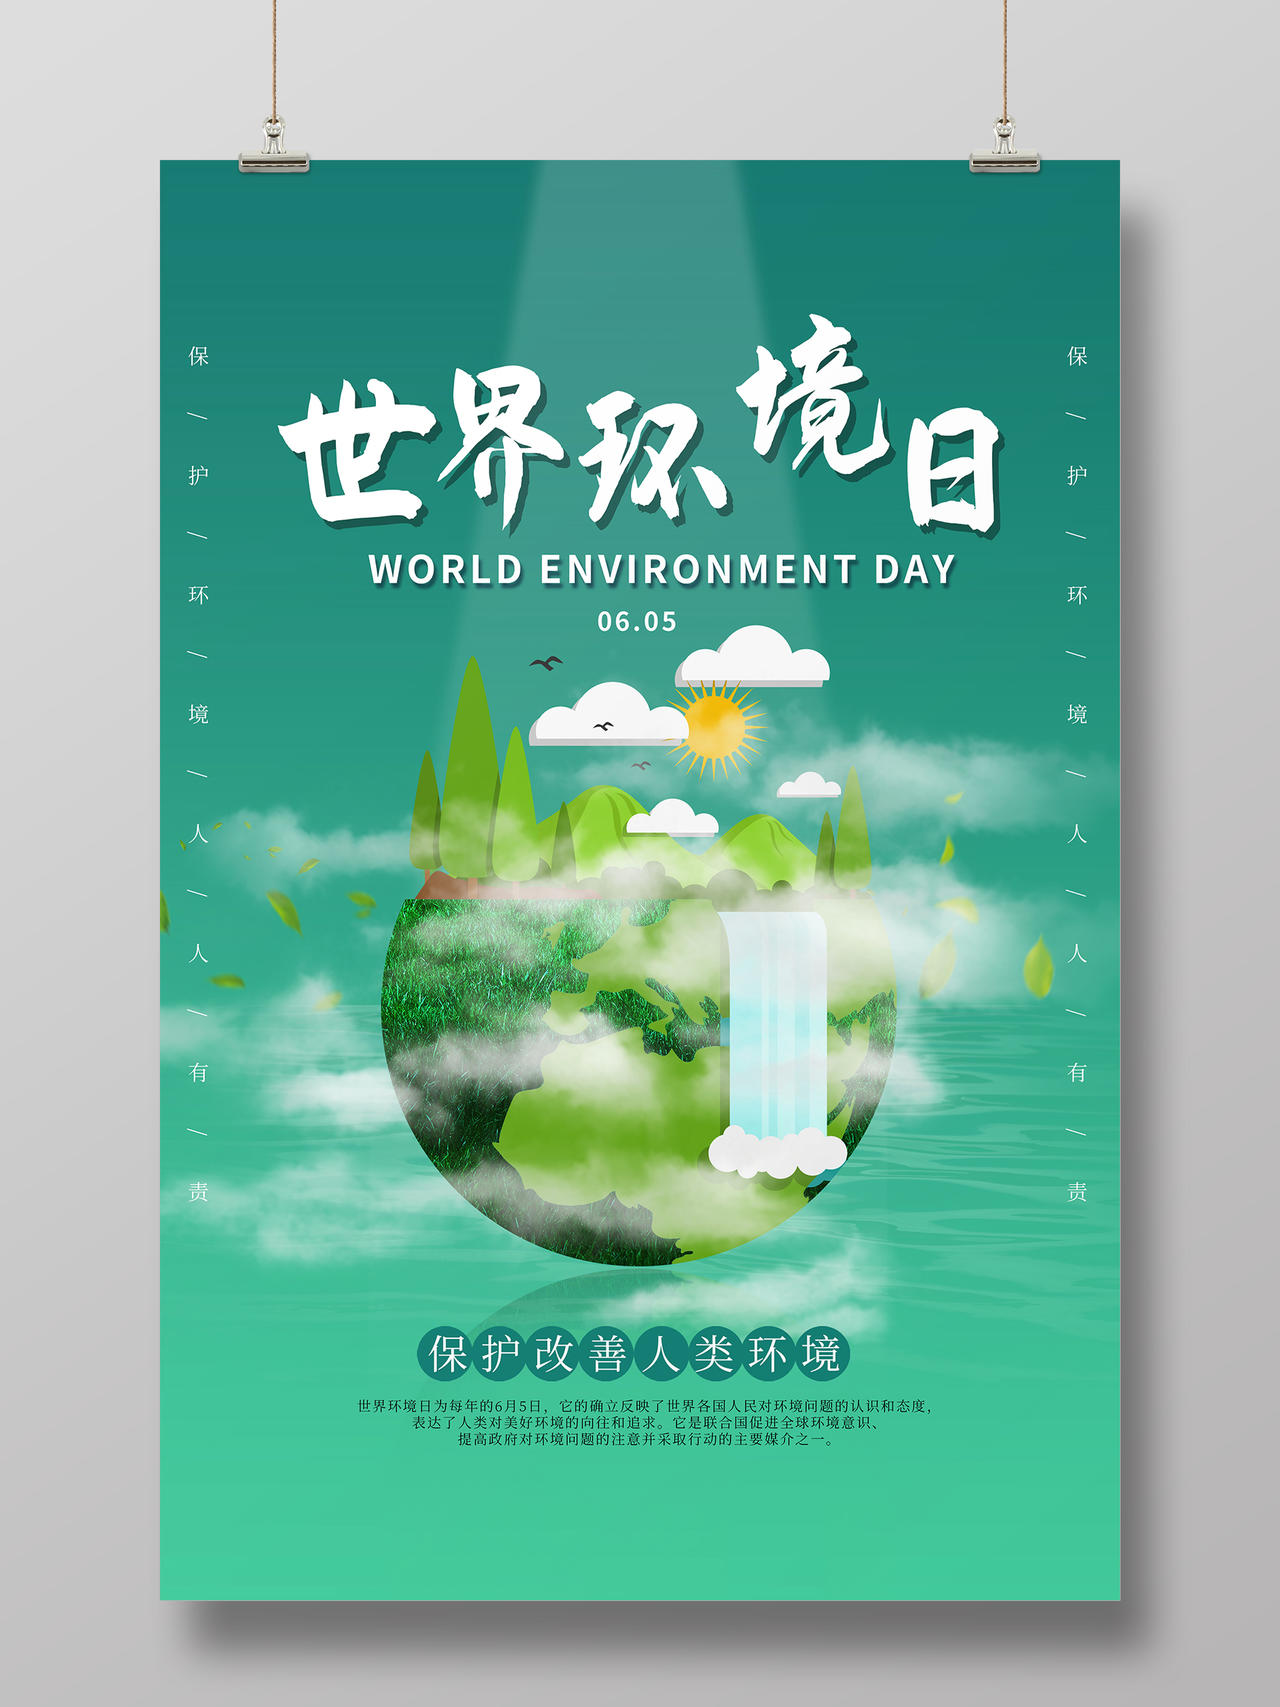 简约大气绿色环保保护环境保护地球世界环境日宣传海报